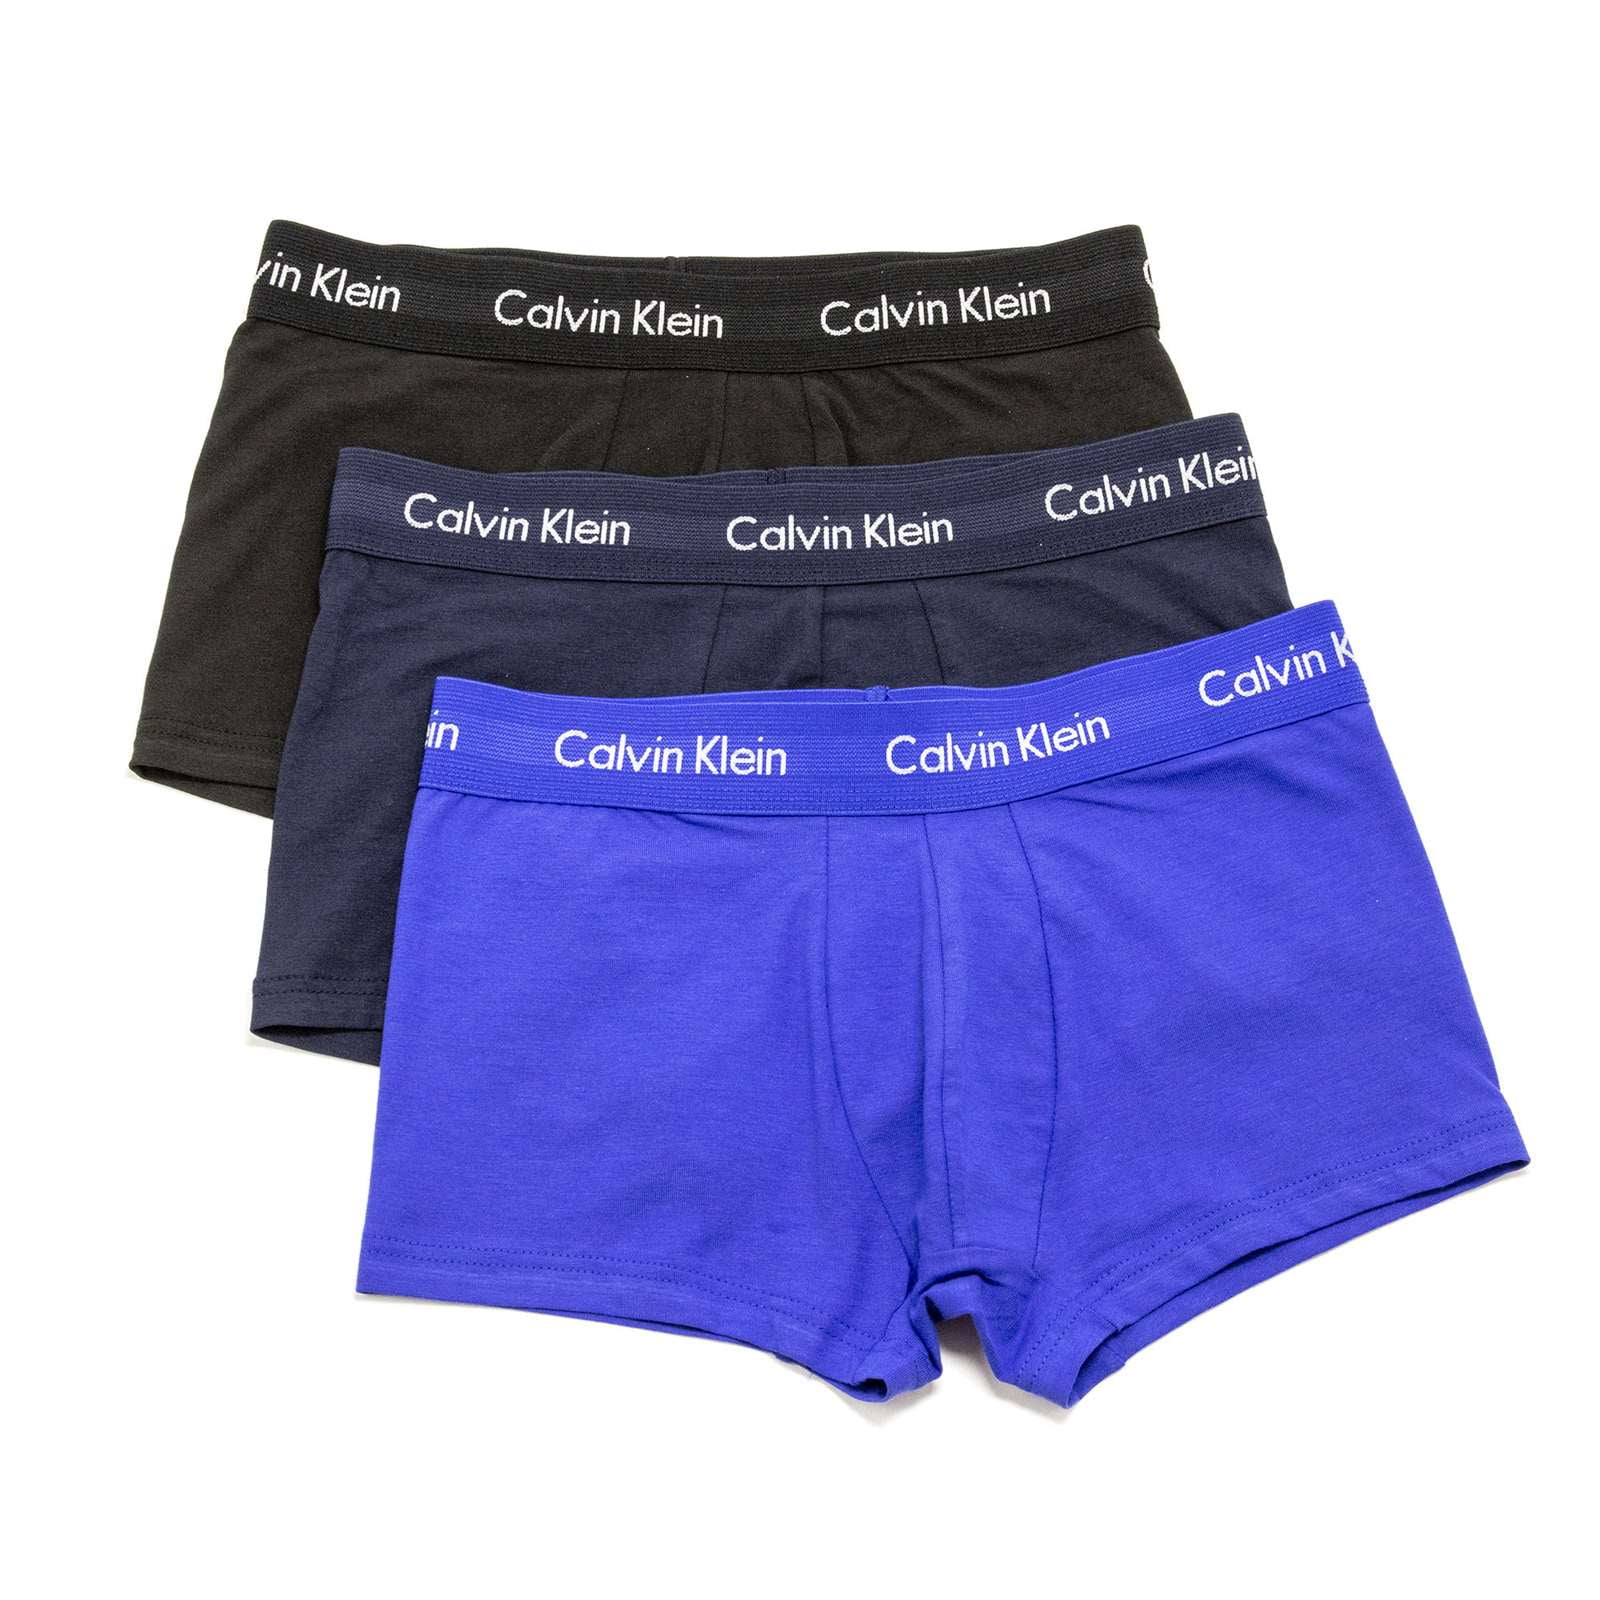 Calvin Klein Underwear Trunk 3 Pack Shorts Black/ Exact/, DEFSHOP